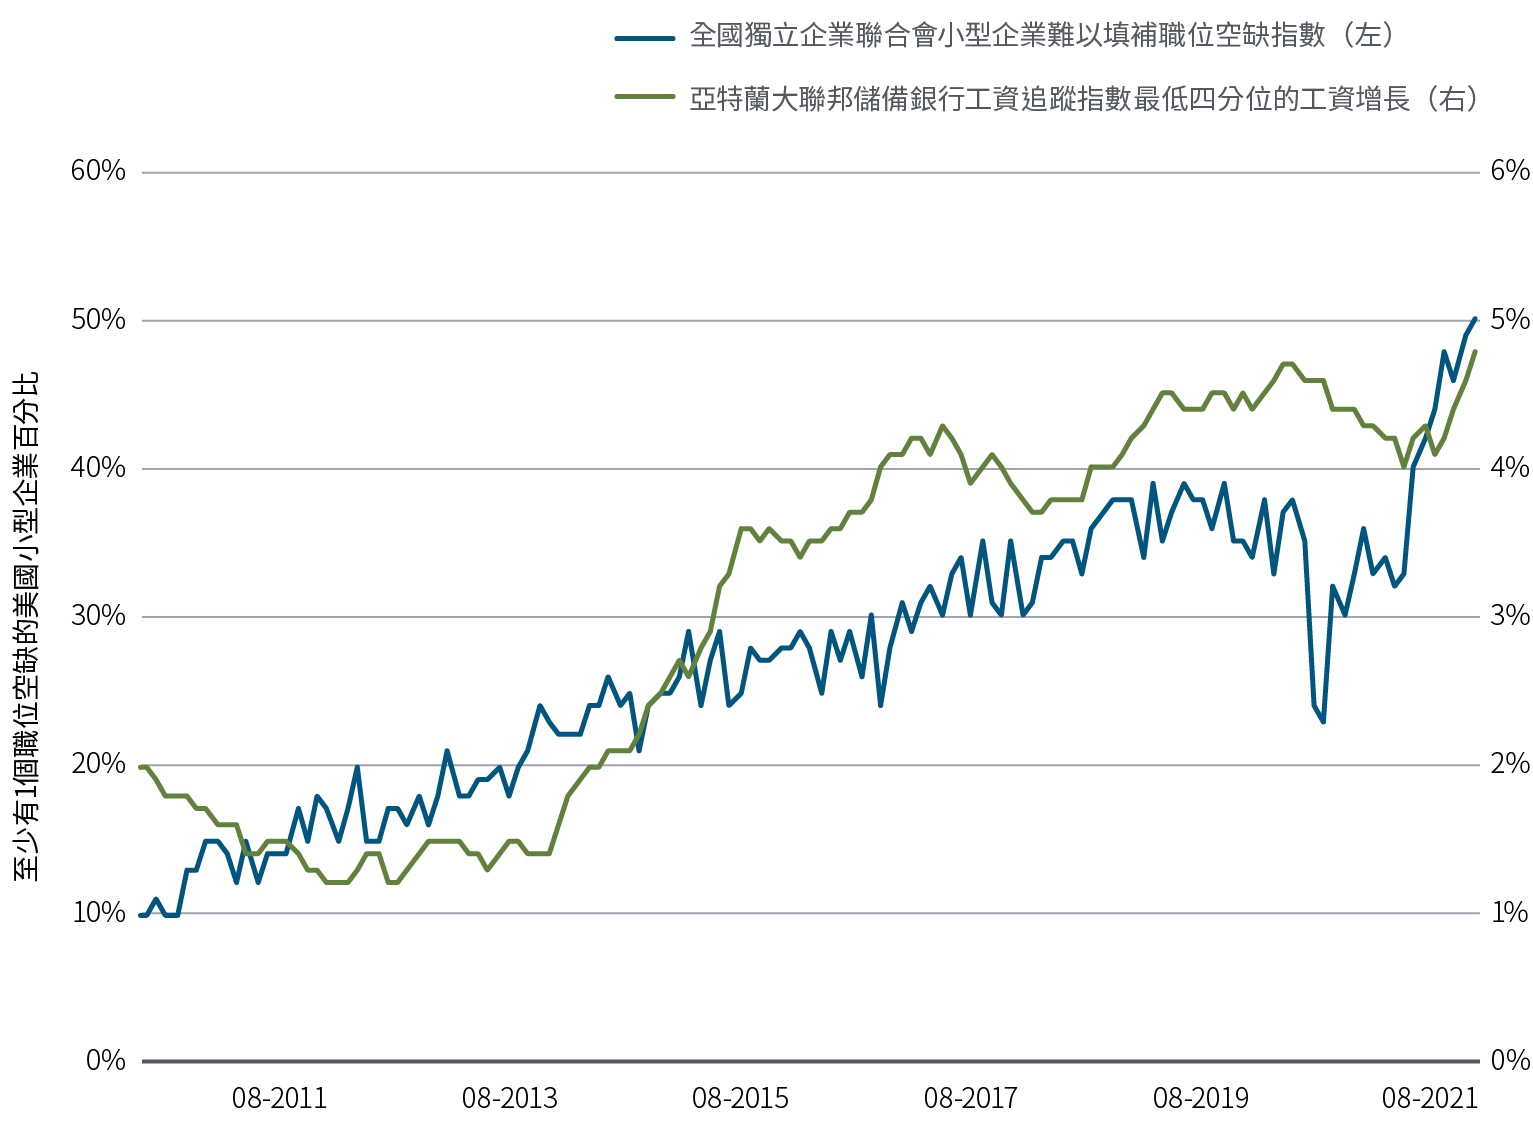 圖1以折線圖顯示兩組由2010年8月至2021年8月的數據。美國全國獨立企業聯合會小型企業難以填補職位空缺指數最初處於10，至期末升至略高於50，除了在2020年短暫下跌之外，期間整體升勢穩定。亞特蘭大聯邦儲備銀行工資追蹤指數最低四分位的工資增長在2010年8月約為2%，其後數年趨跌，之後反覆上升，於2021年8月升至4.8%。